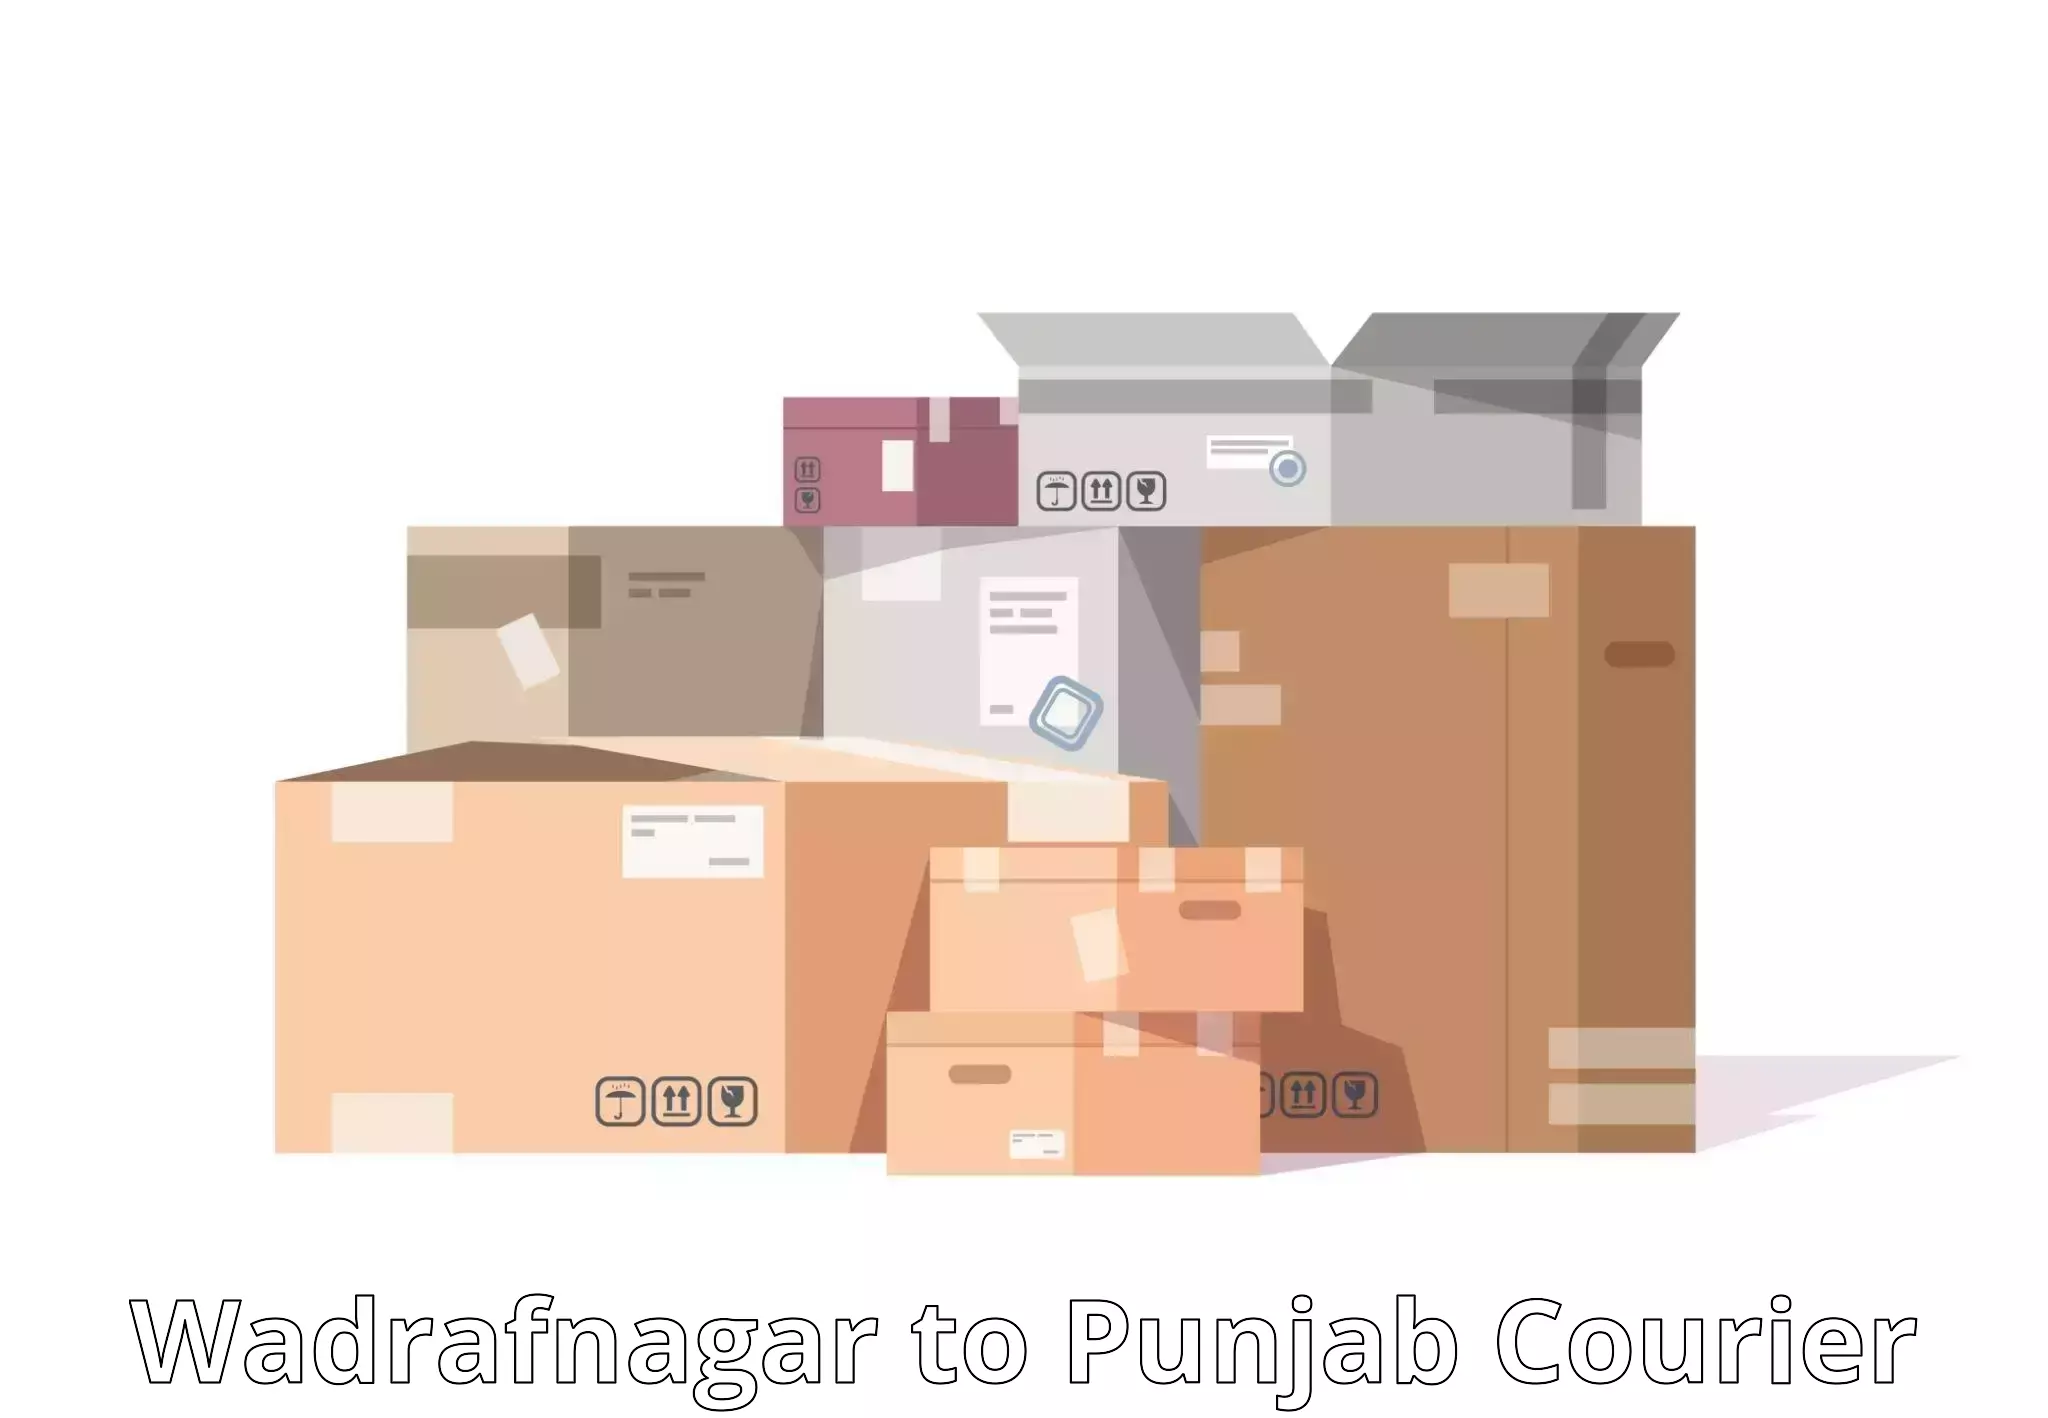 Global courier networks Wadrafnagar to Dhuri